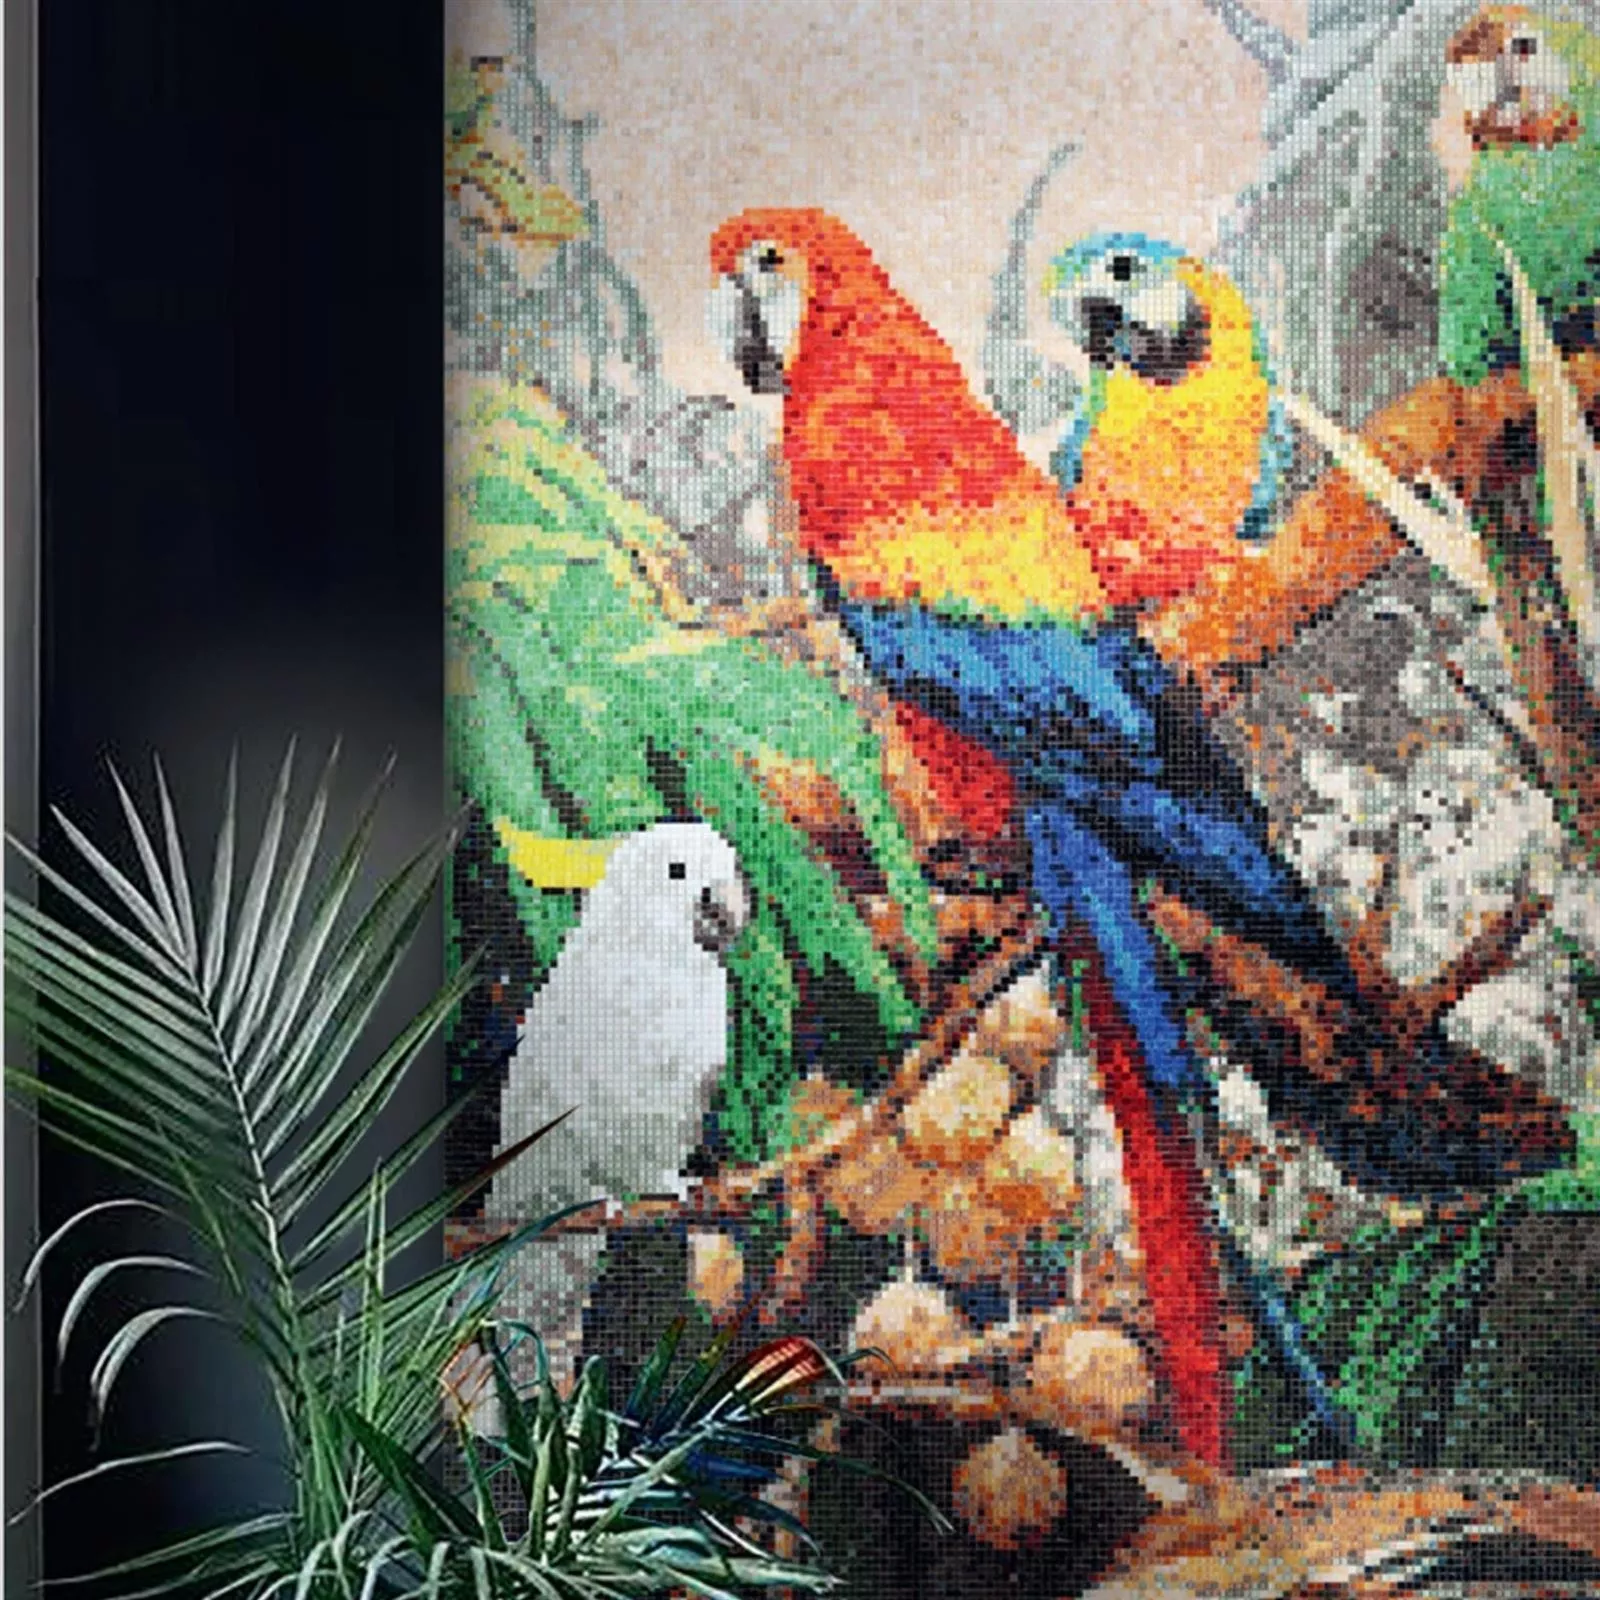 Glass Mosaic Picture Parrots 100x240cm